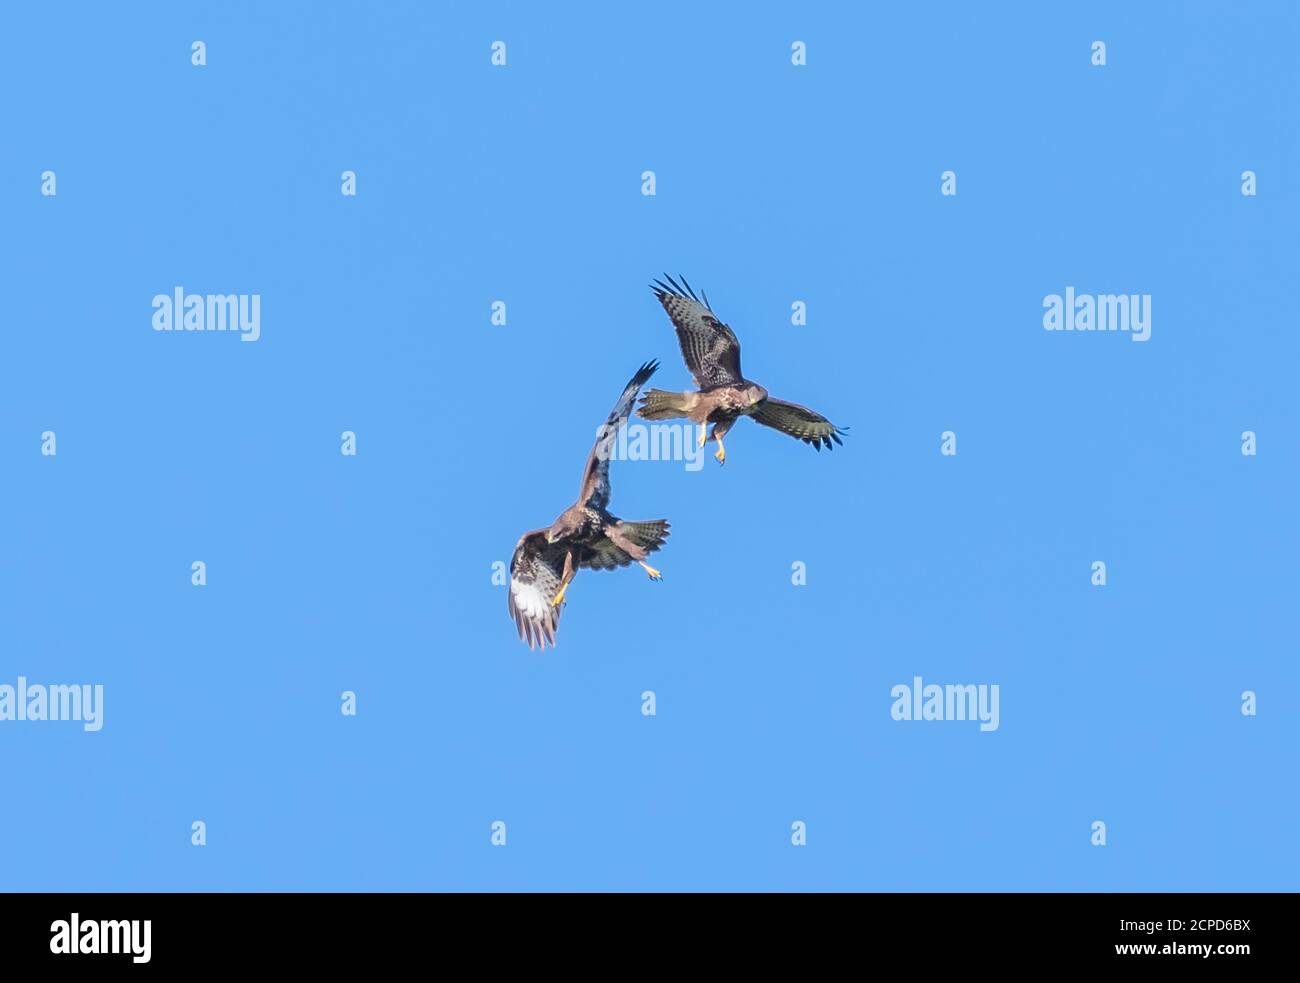 Paire d'oiseaux Buzzard (Buteo buteo), oiseaux de proie, en vol, jouer à la lutte. Des bourdonnes volent contre le ciel bleu dans West Sussex, Angleterre, Royaume-Uni. Banque D'Images